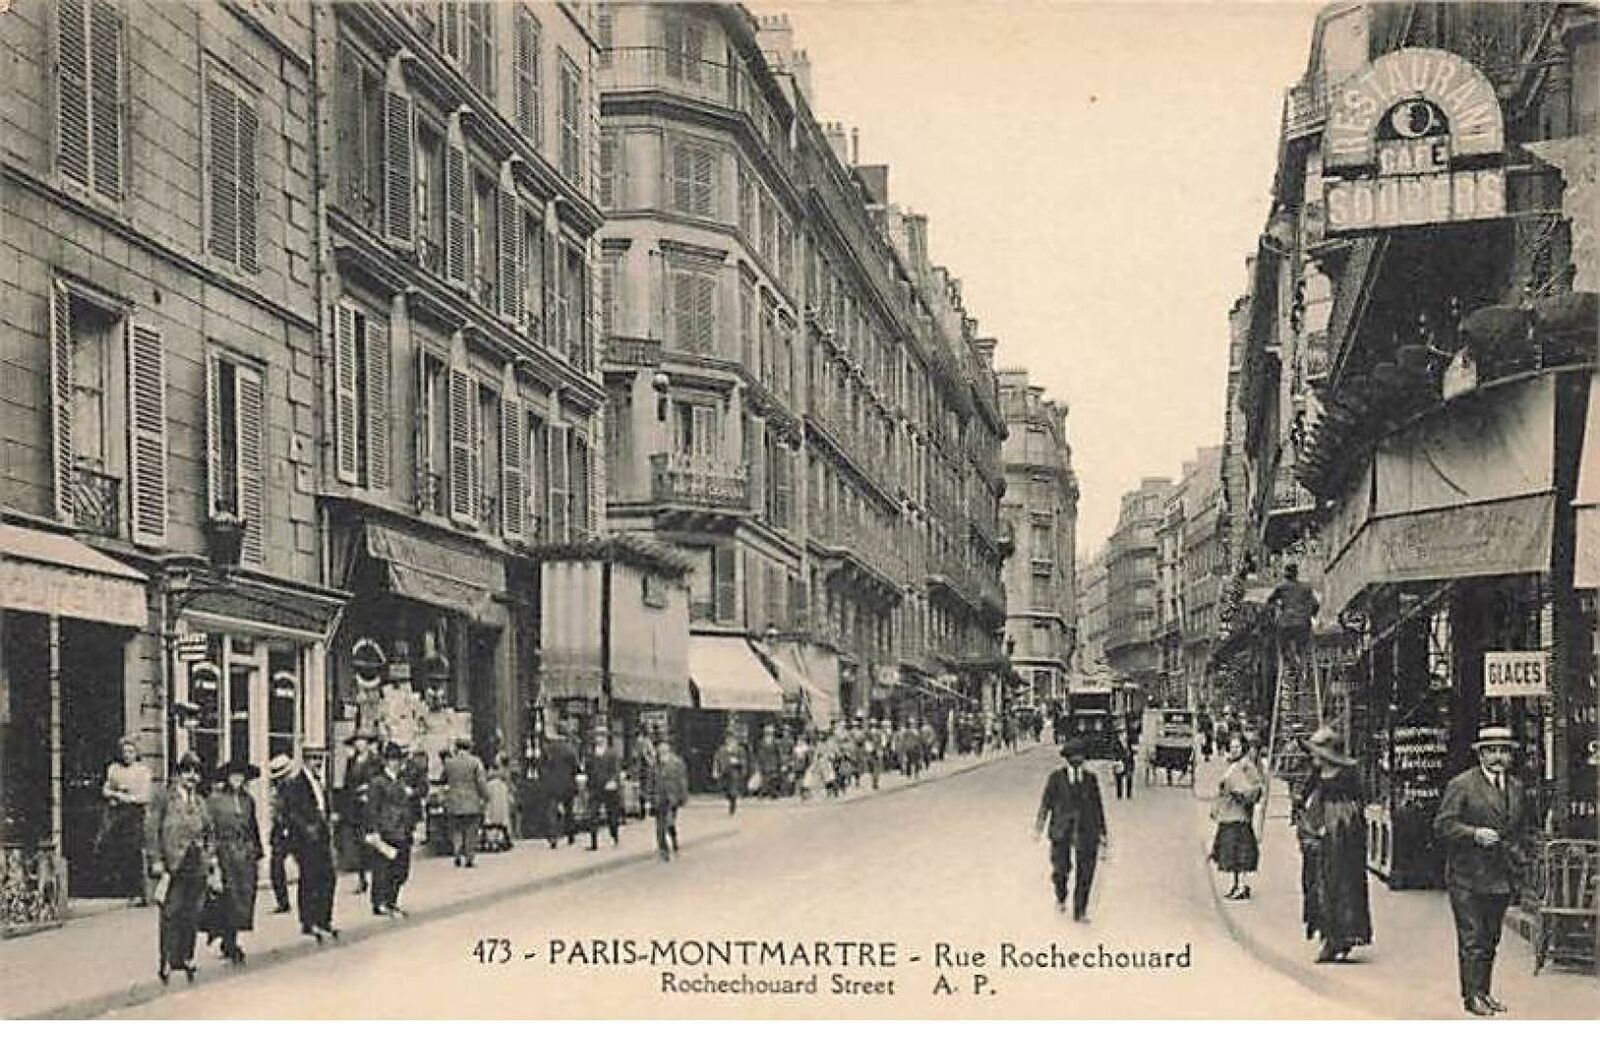 PARIS IX - Paris-Montmartre - Rue Rochechouard - restaurant, shops